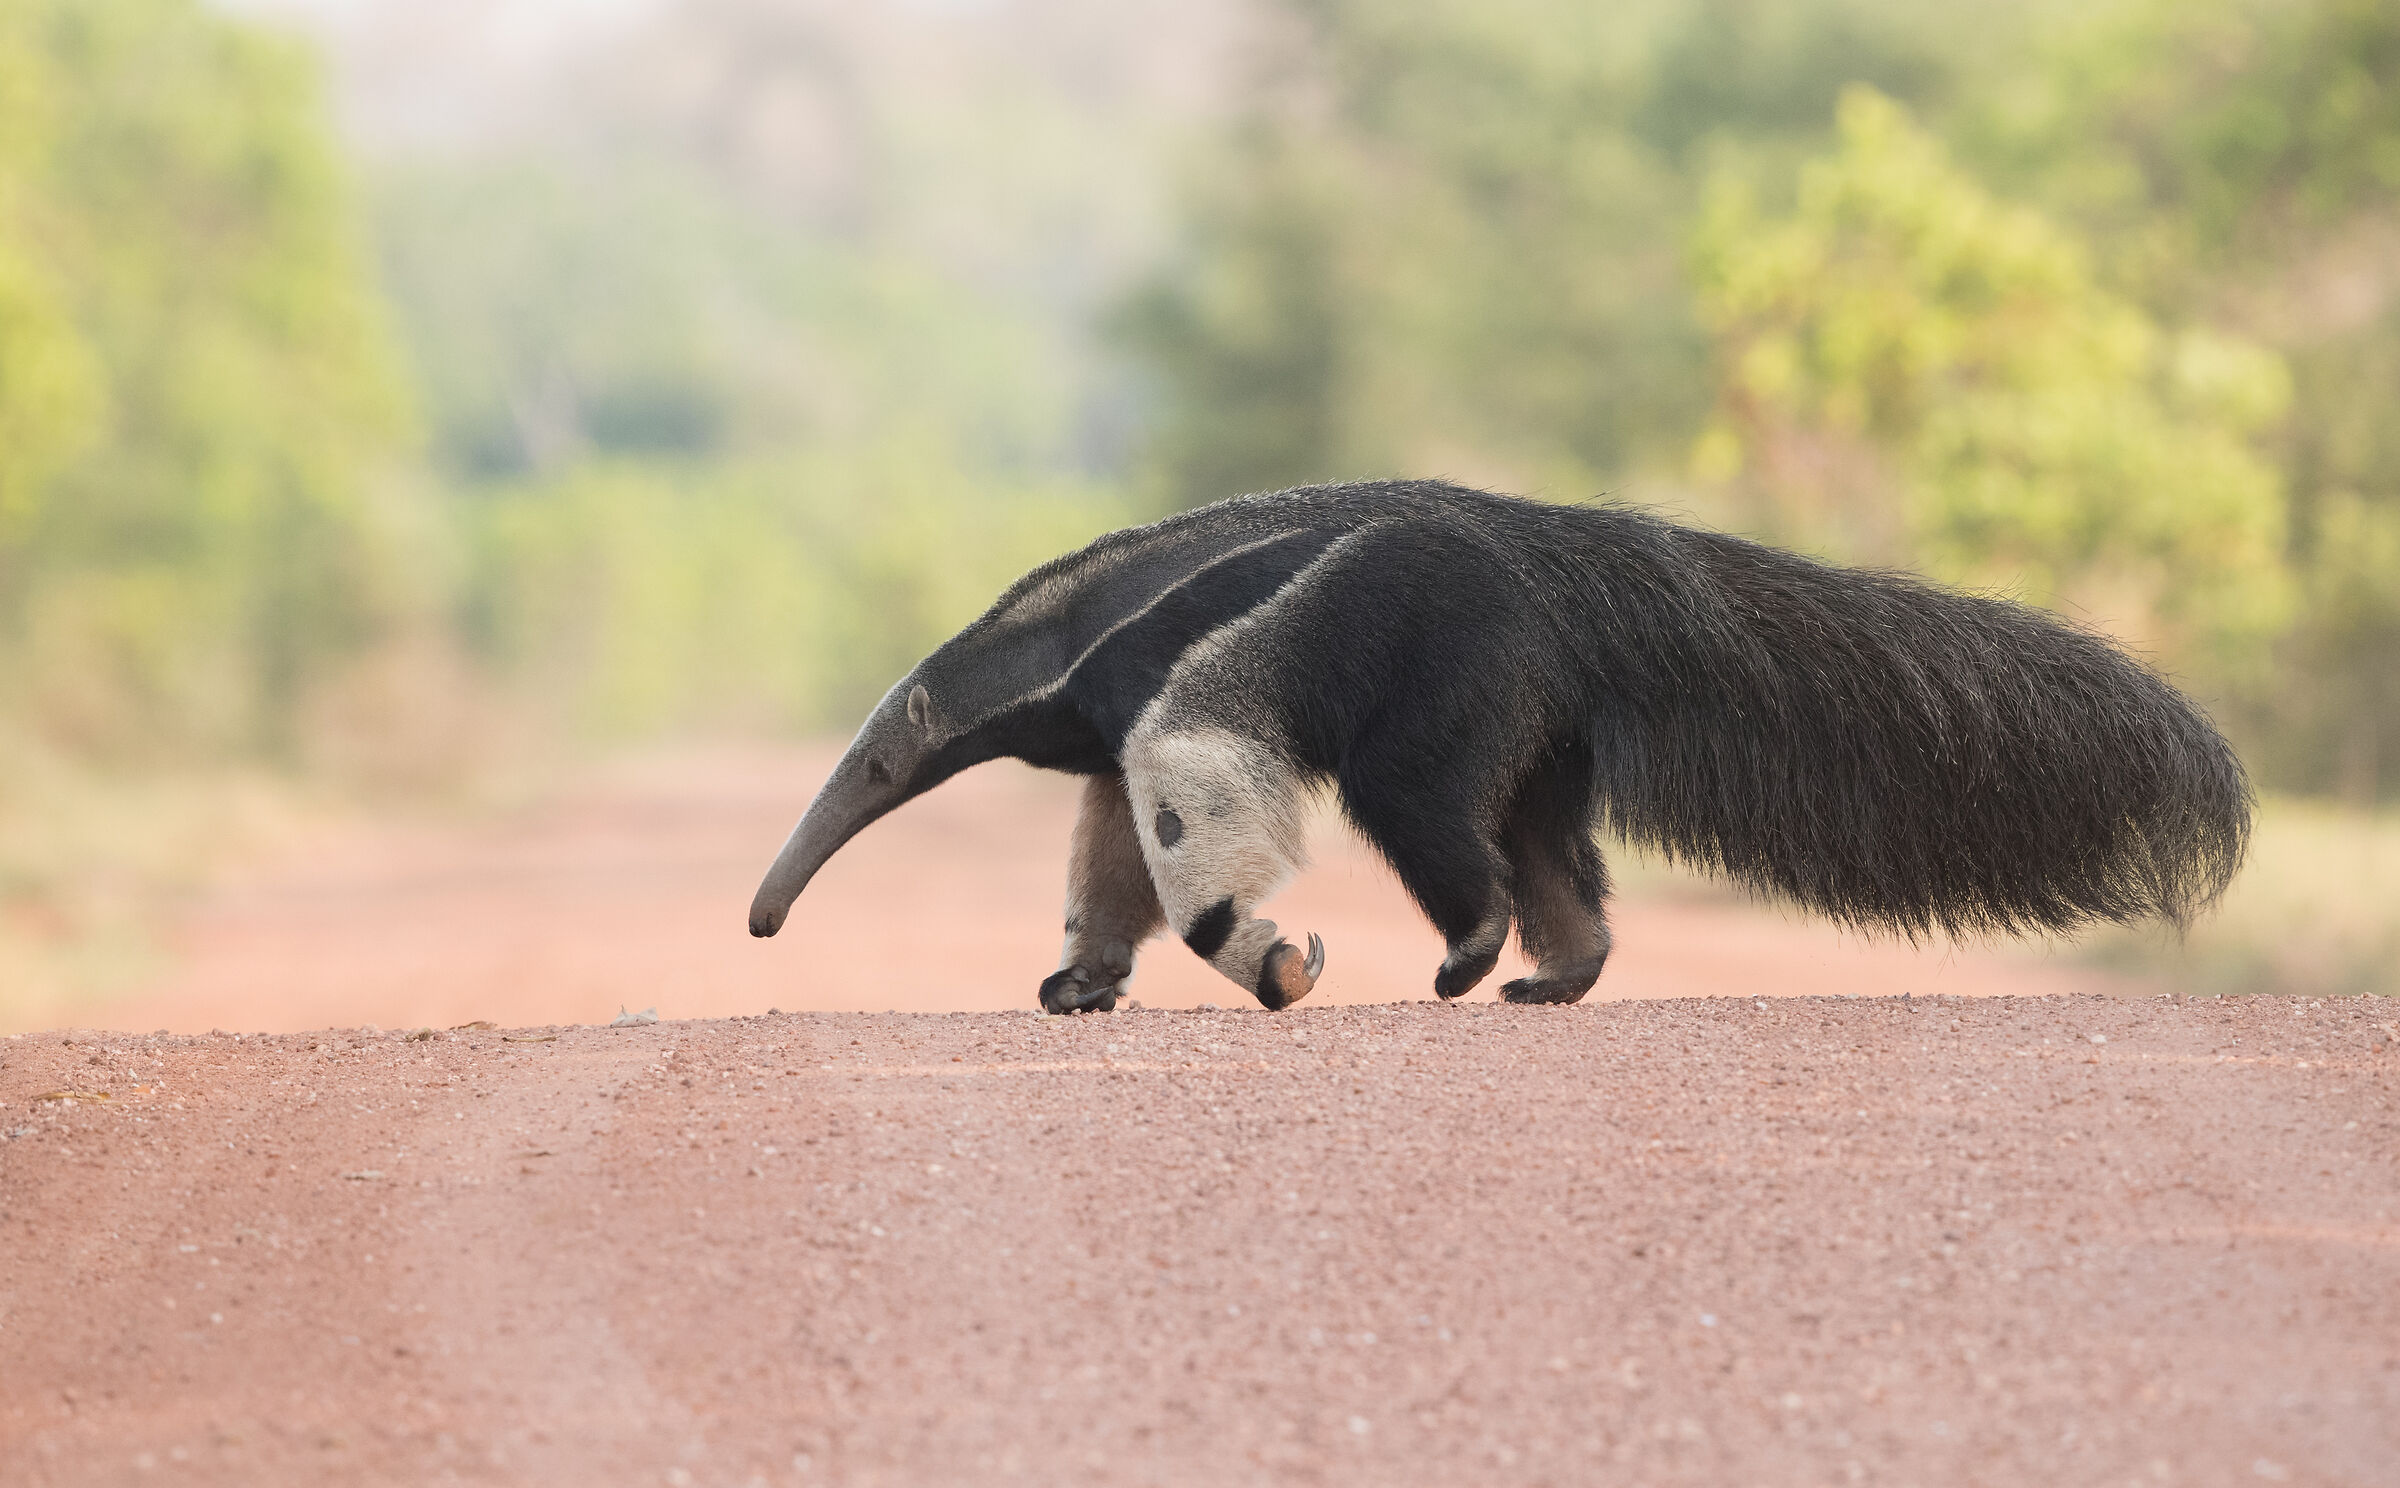 Giant anteater...